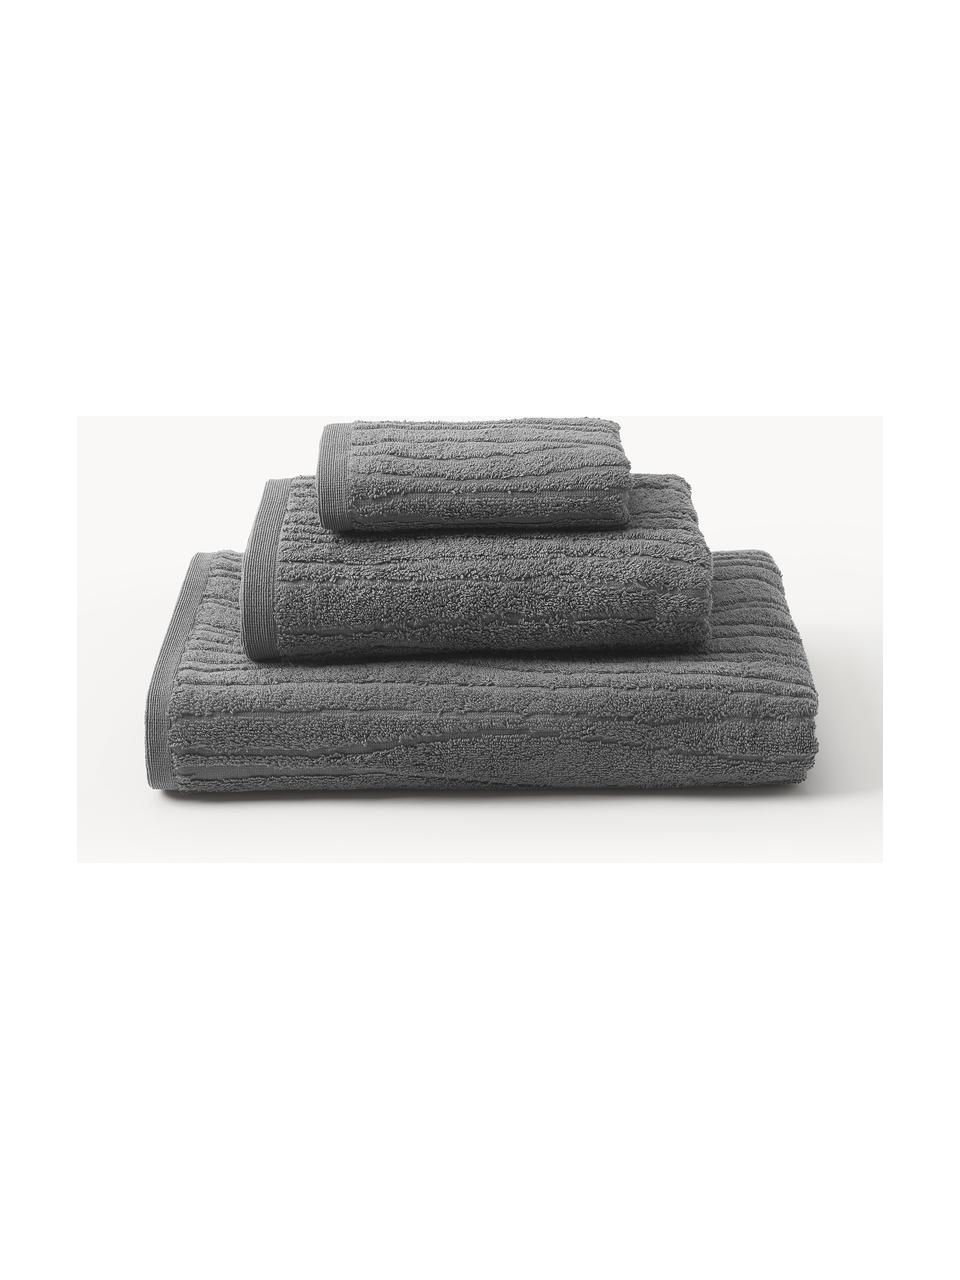 Set di 3 asciugamani in cotone Audrina, in varie misure, Grigio scuro, Set in varie misure